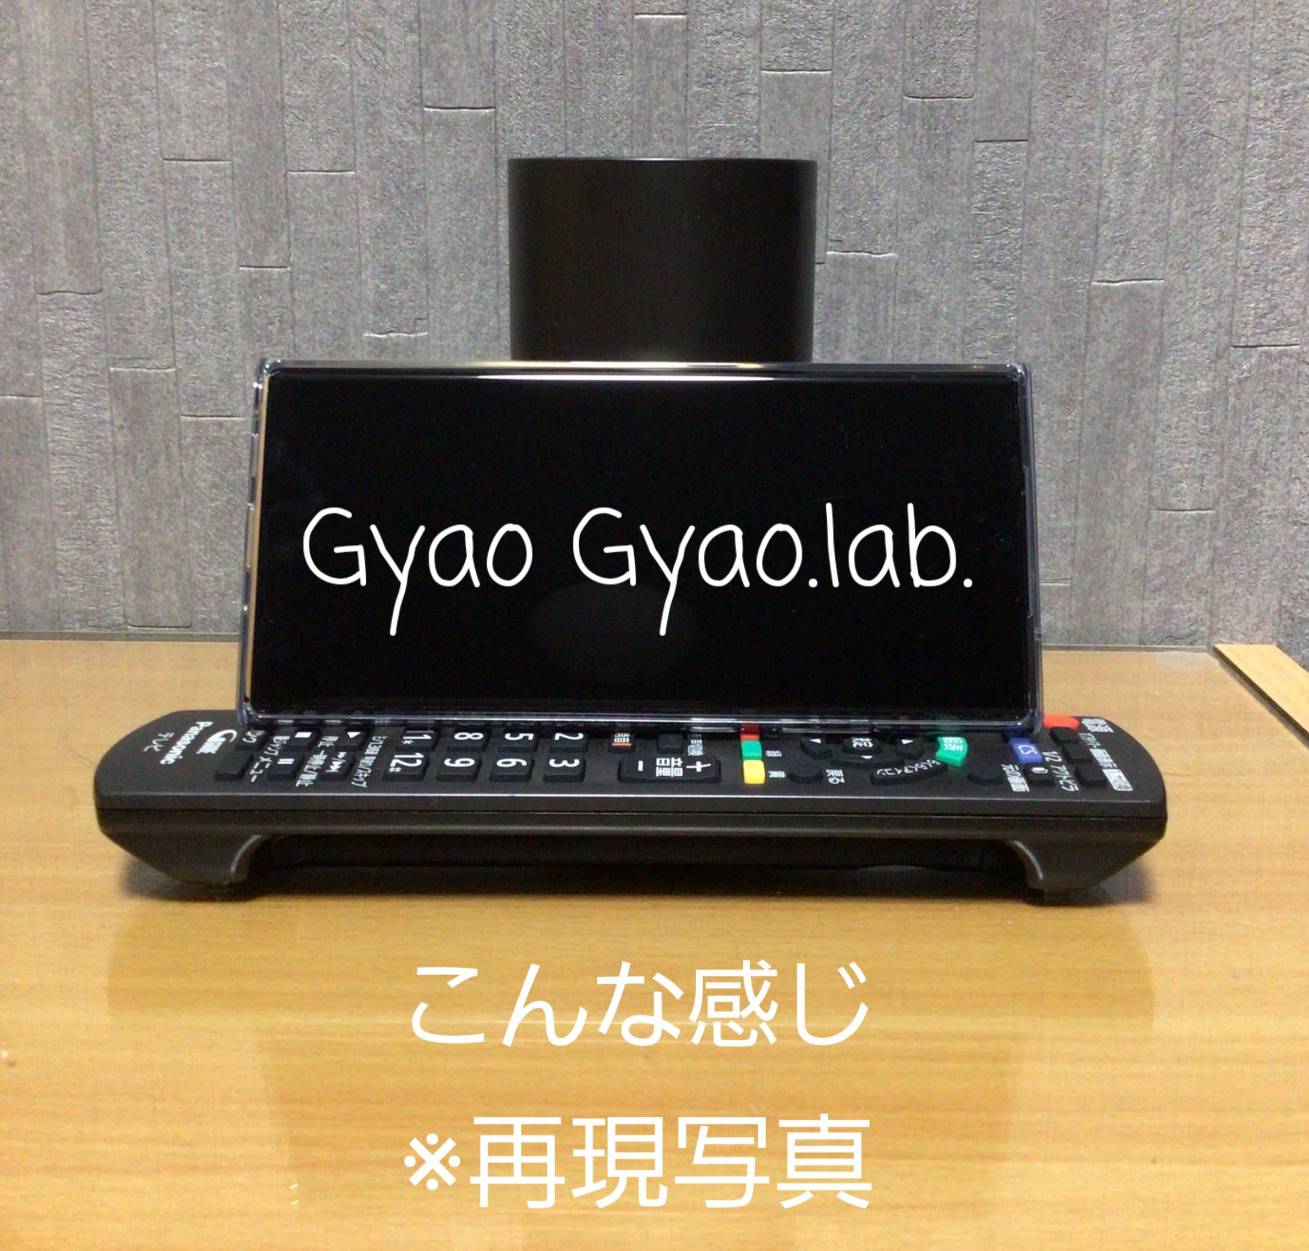 小さな便利by Gyao Gyao.lab.